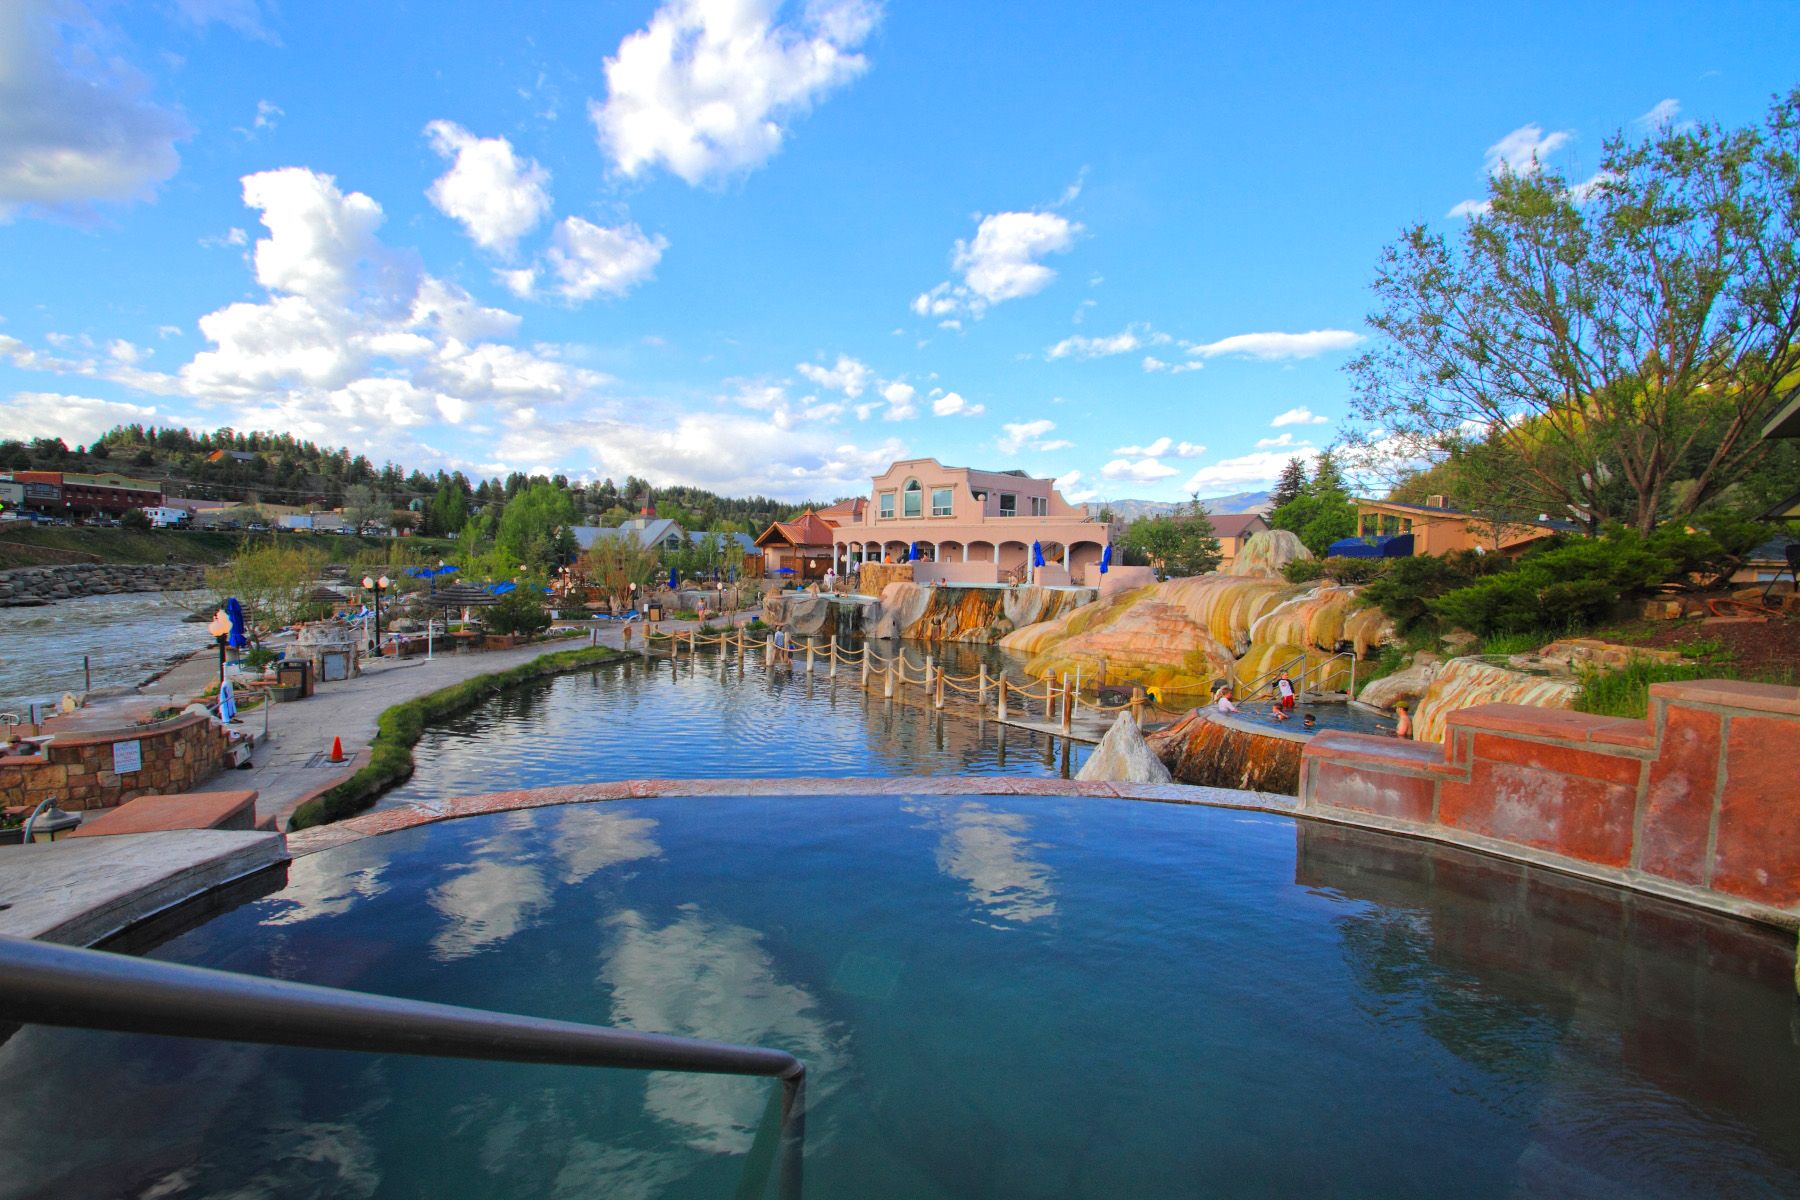 Hot springs in Pagosa Springs Colorado